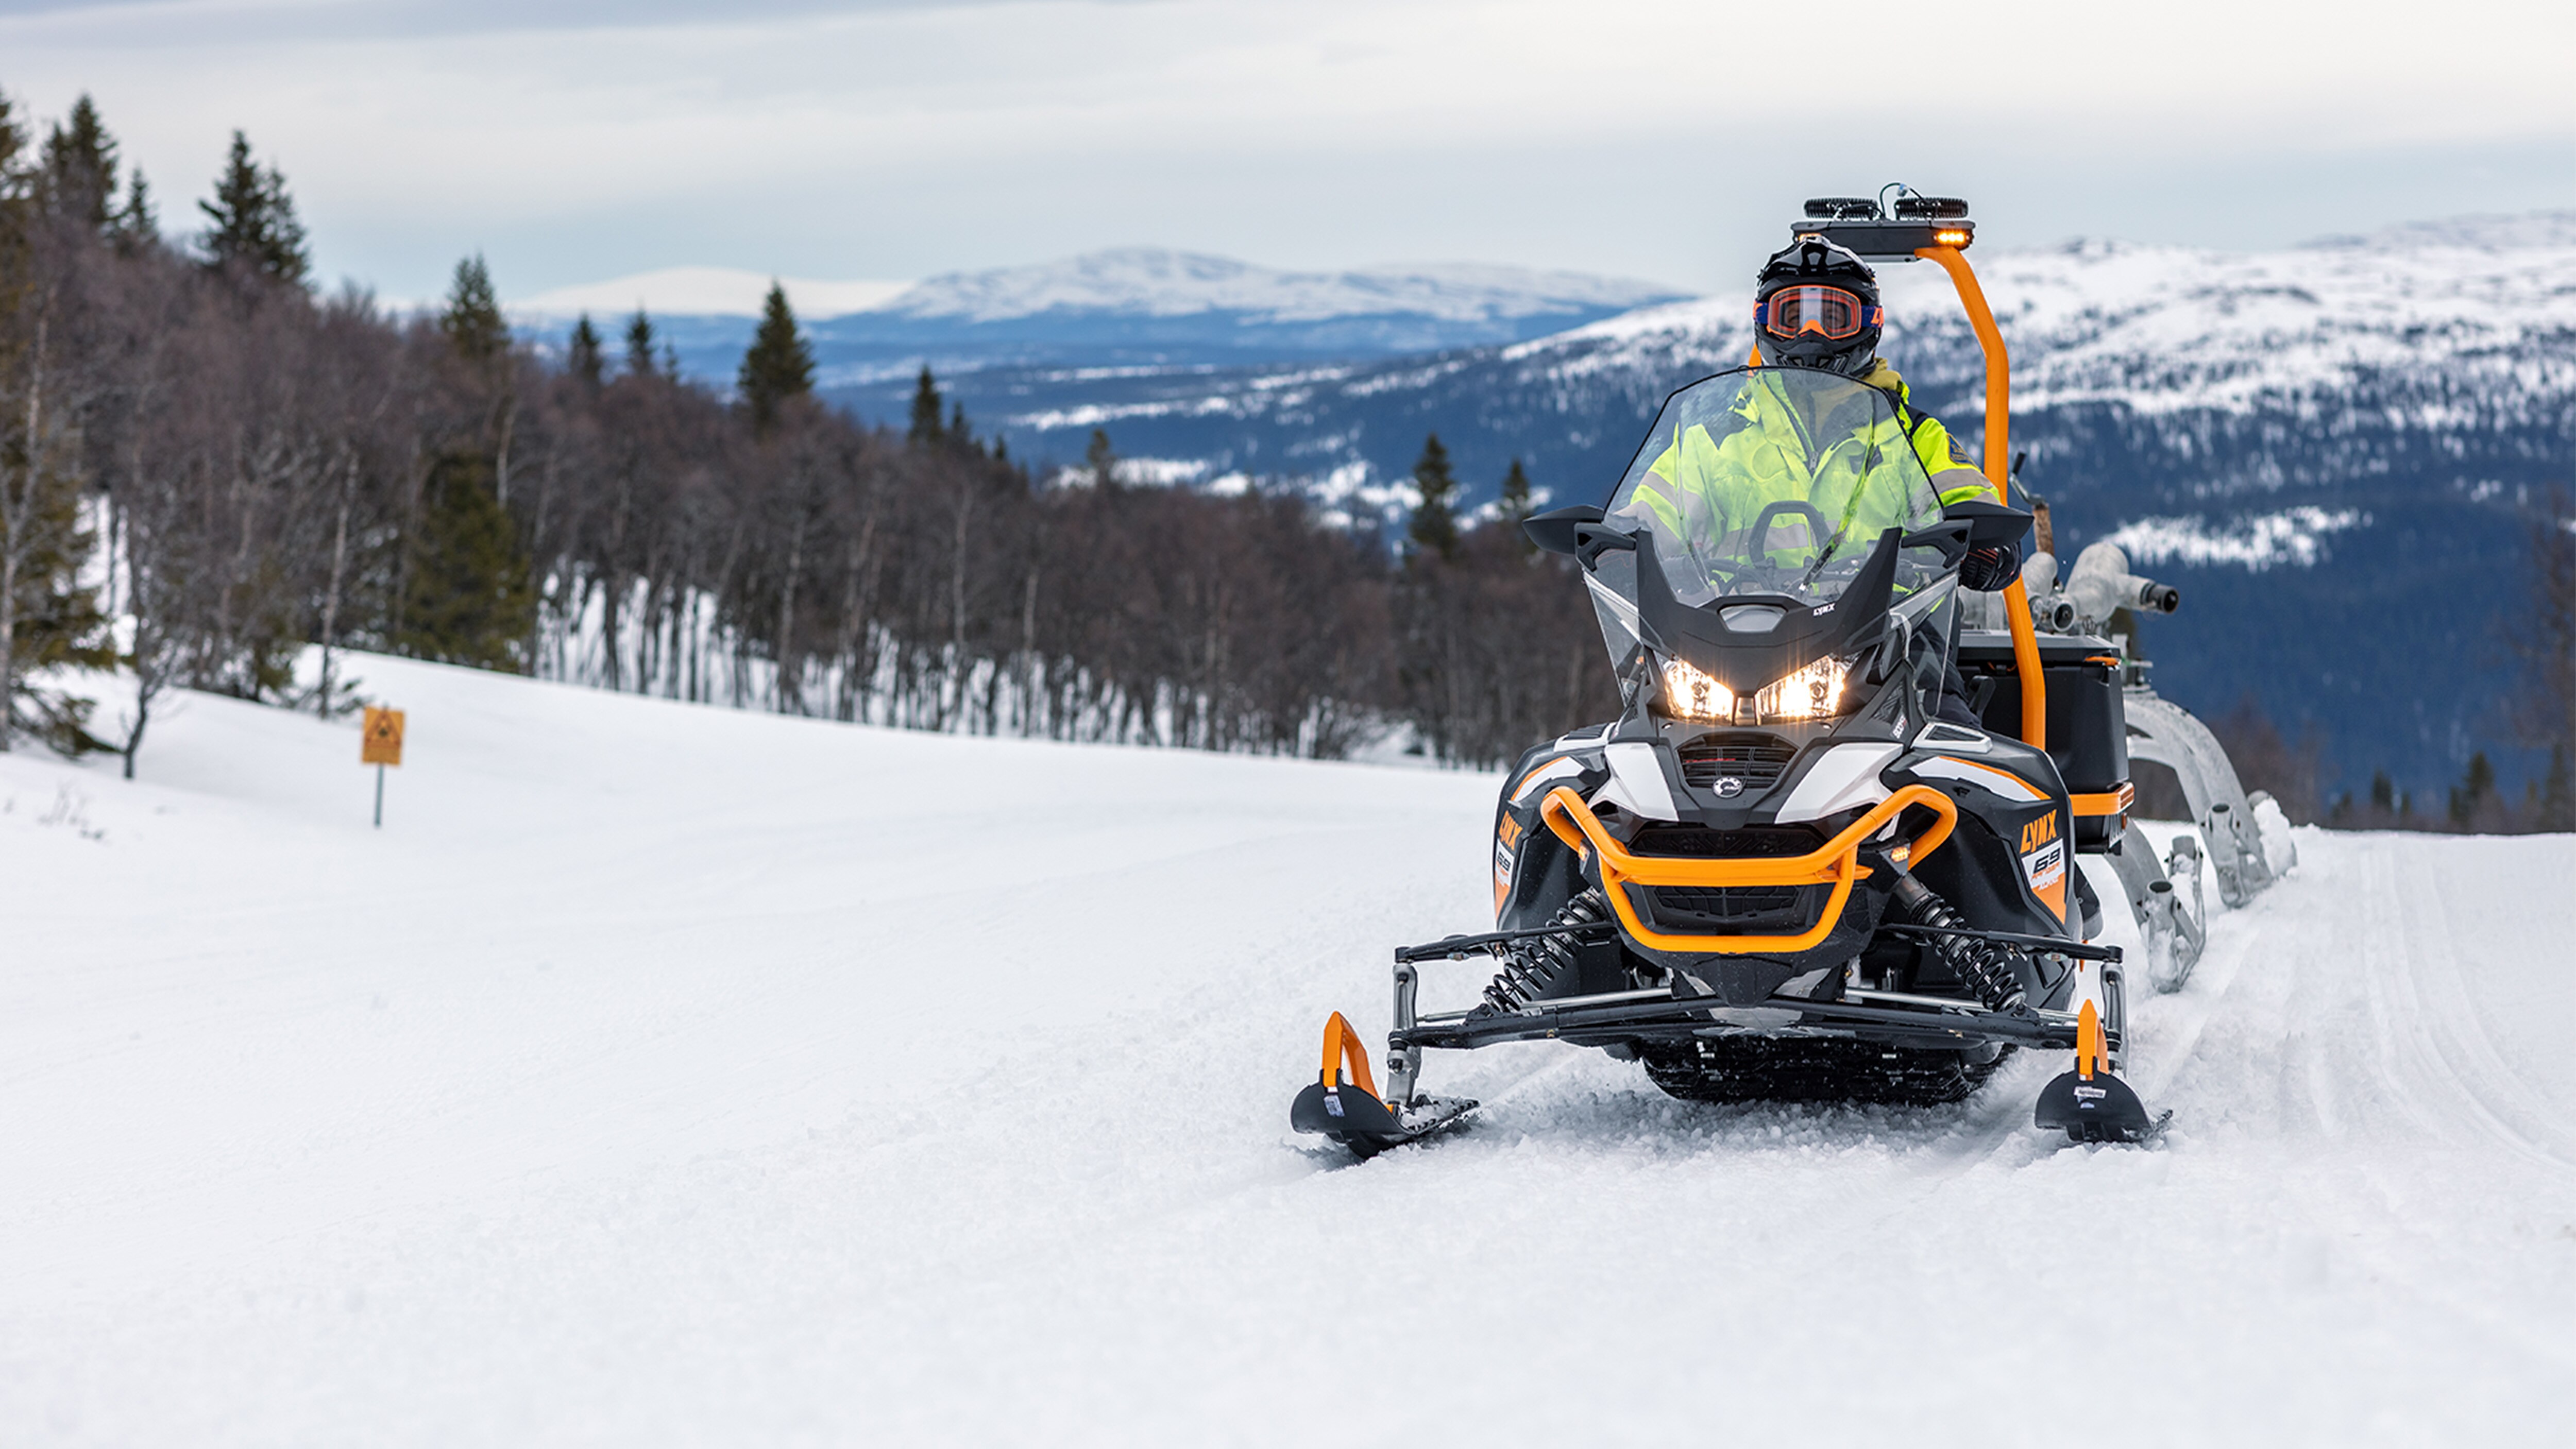 Lynx 69 Ranger Alpine snowmobile in towing work at ski resort